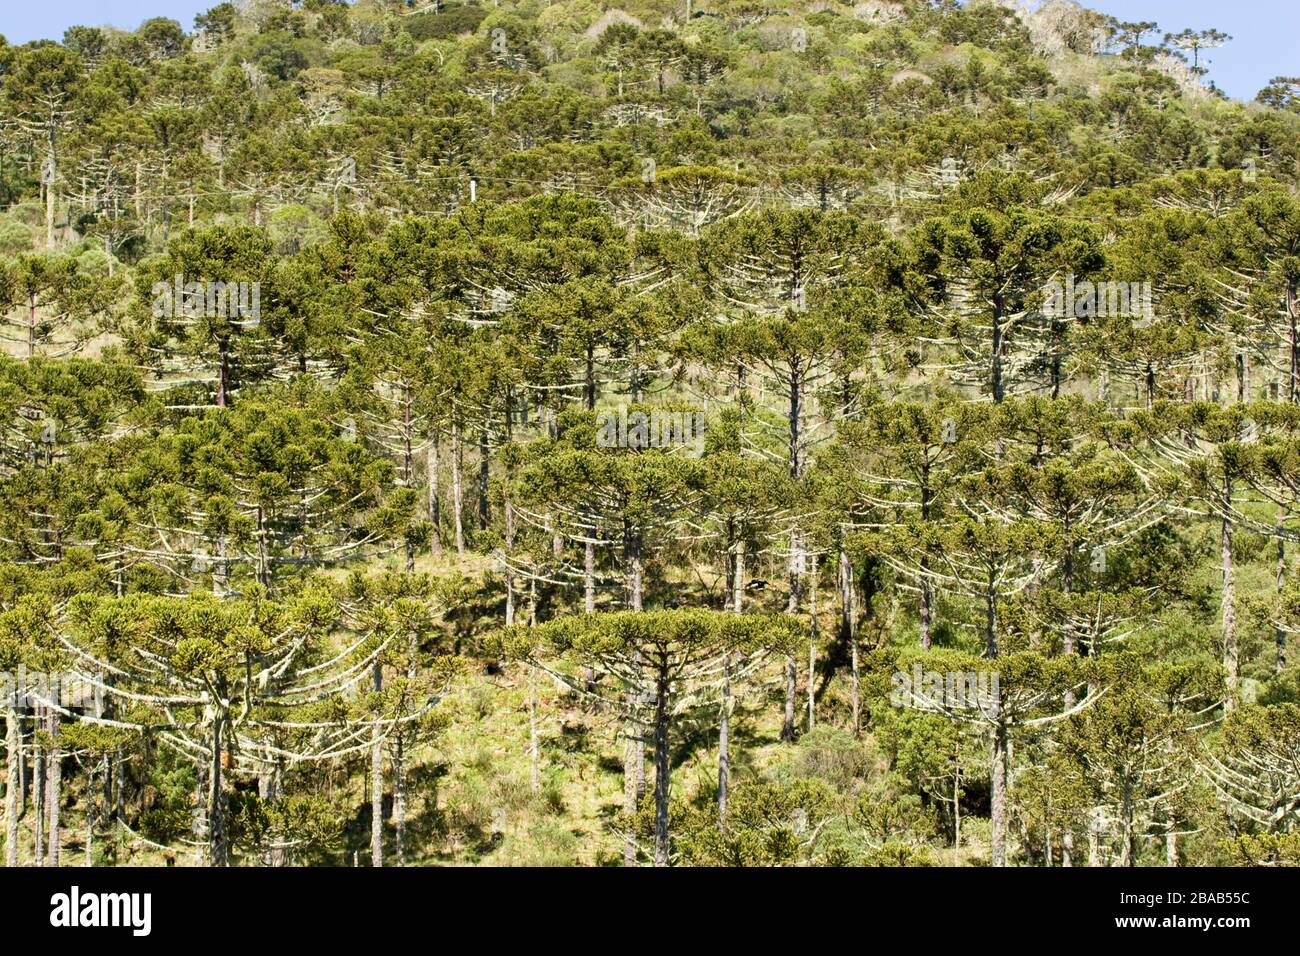 Forest of Araucaria, Pinheiro-pity-paraná, Araucaria angustifolia, São José dos Ausentes, Rio Grande do Sul, Brazil Stock Photo